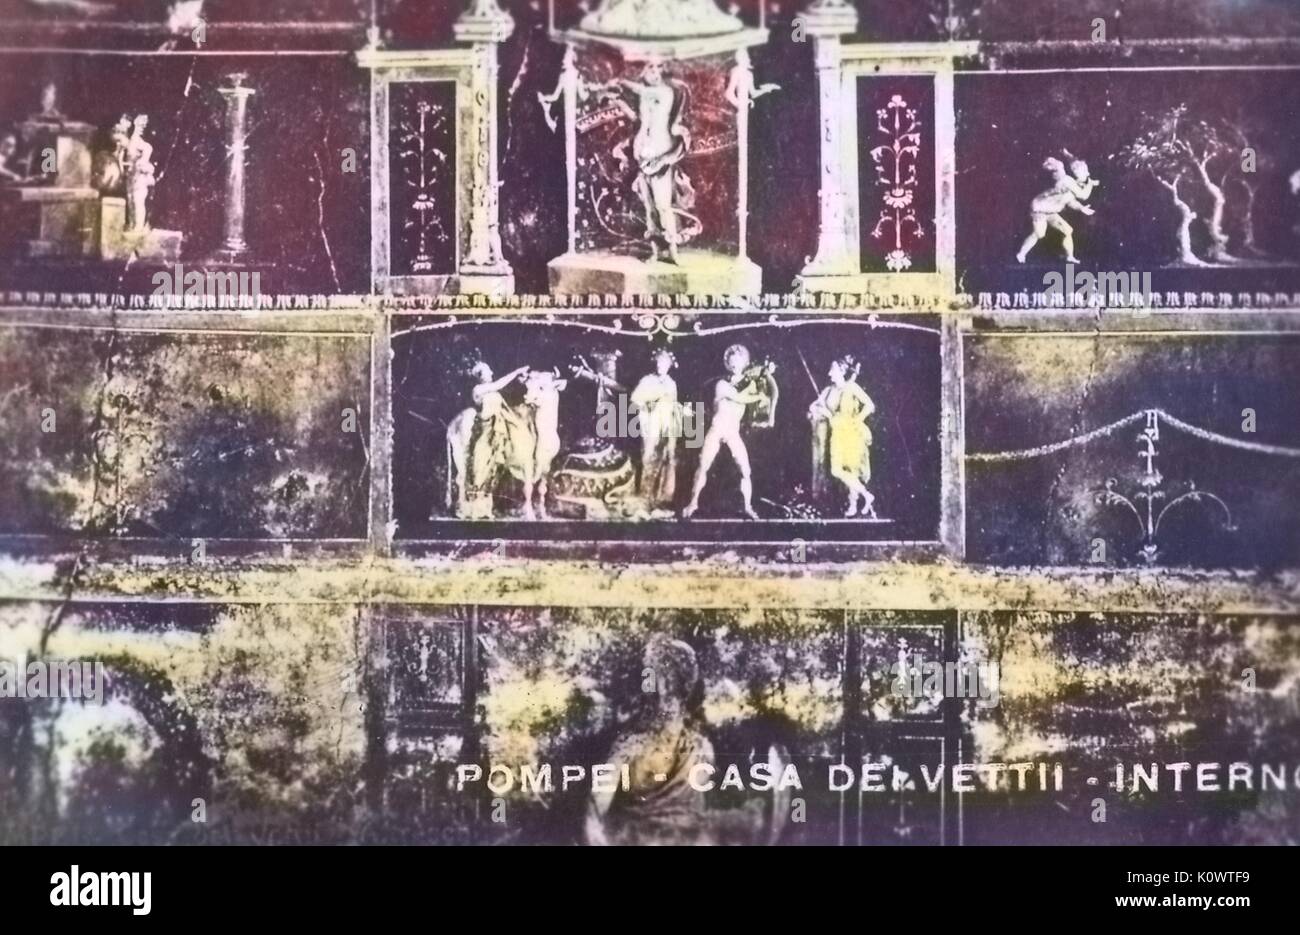 Alte Postkarte aus Pompeji zeigt ein Detail aus der Wand Dekoration im TRICLINIUM der Casa dei Vettii, Pompeji, Italien, 1946. Hinweis: Das Bild hat digital über ein modernes Prozess eingefärbt worden. Farben möglicherweise nicht sein - genau. Stockfoto